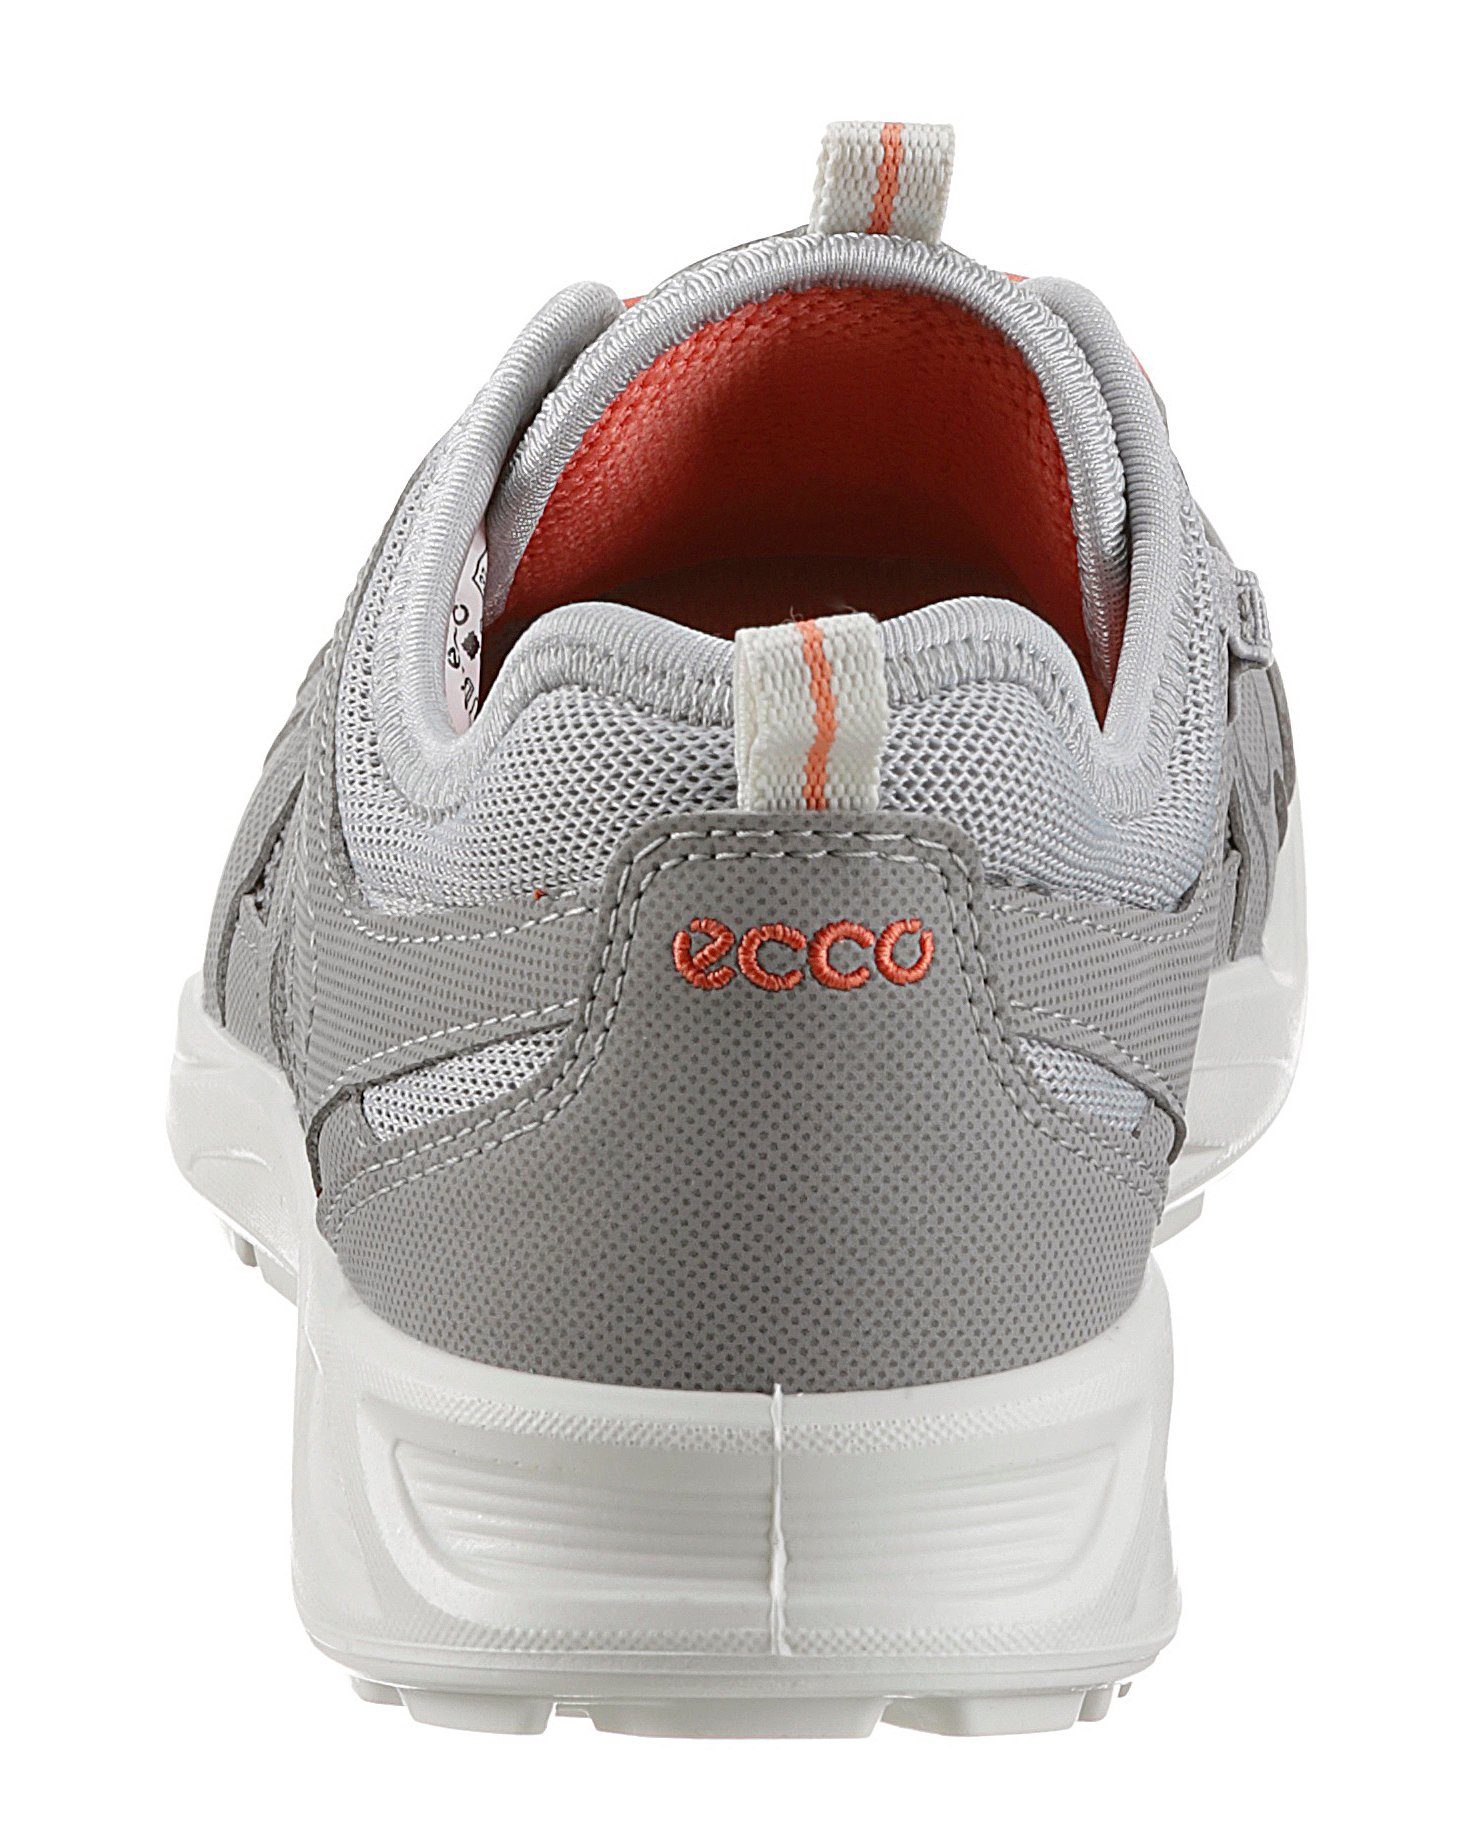 Schnellverschluss LT silberfarben Ecco W Sneaker mit Terracruise praktischem Slip-On